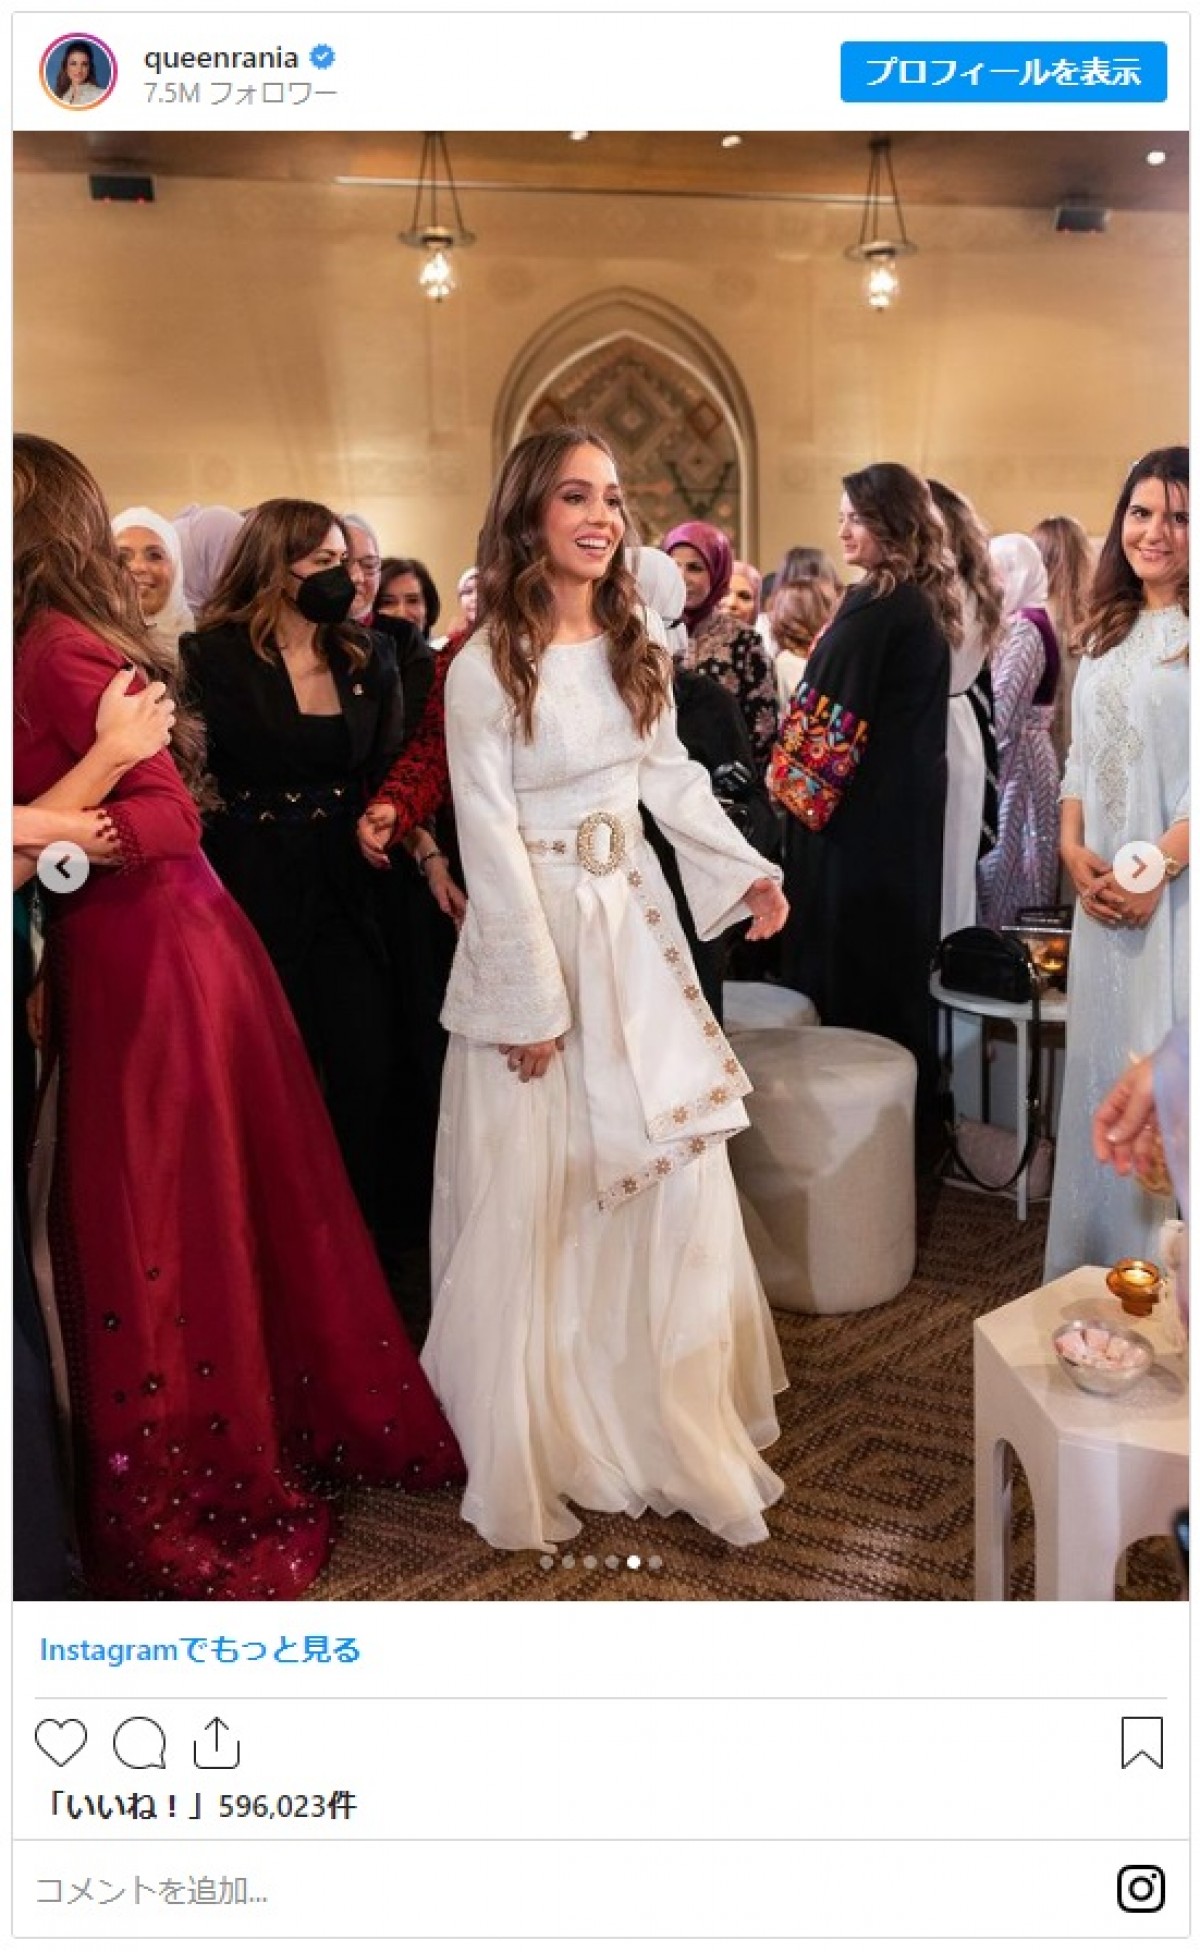 ヨルダン王室イマン王女、母ラーニア王妃のブライダルアイテムを身に着け結婚前のパーティーに